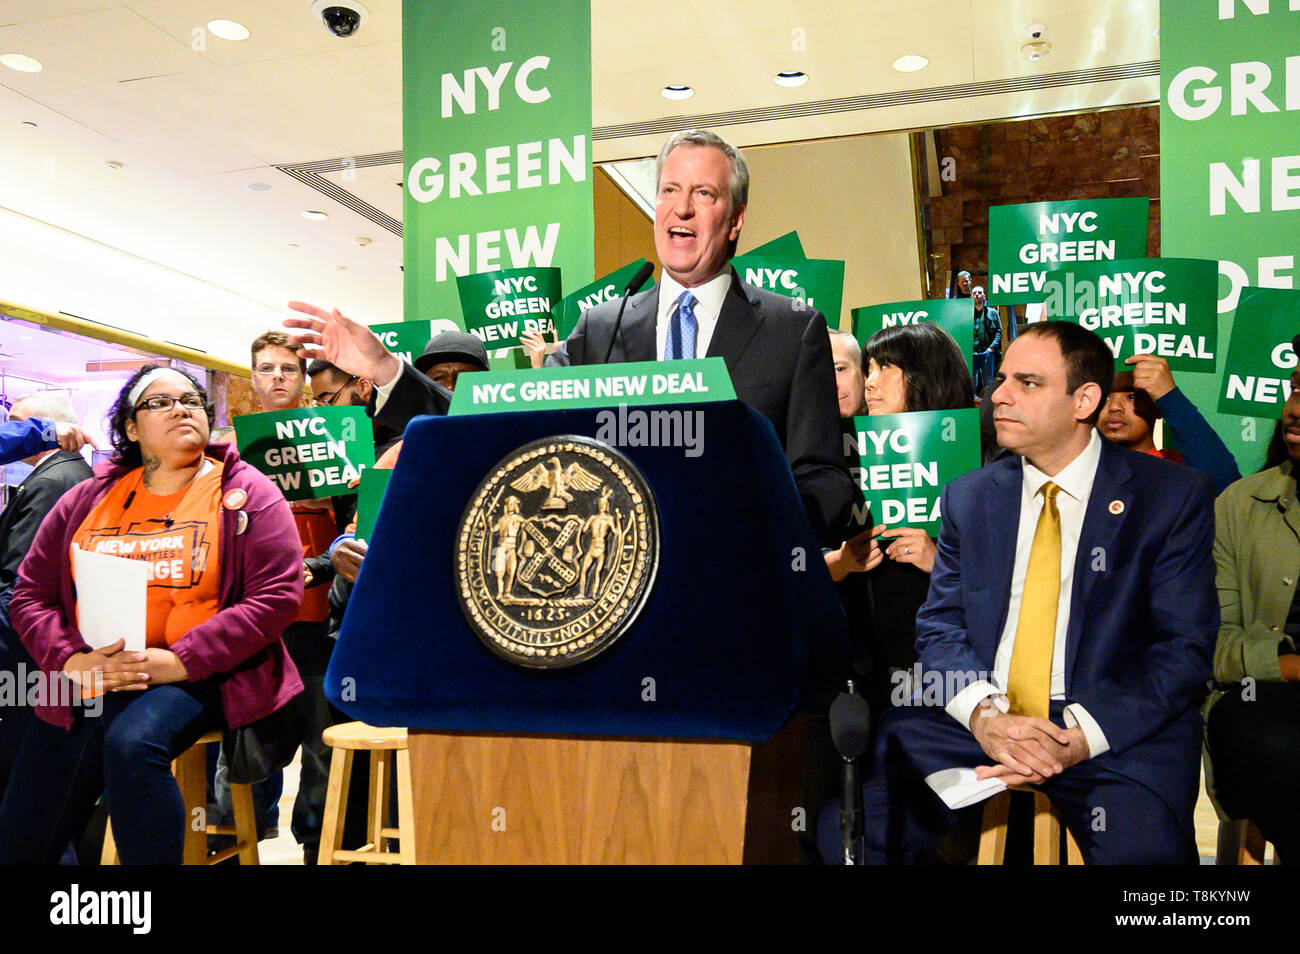 Bürgermeister von New York, Bill De Blasio (D) beobachtet, als er während des Grünen New Deal Kundgebung an der öffentlichen Plaza im Trump Tower in New York City, New York statt. Stockfoto